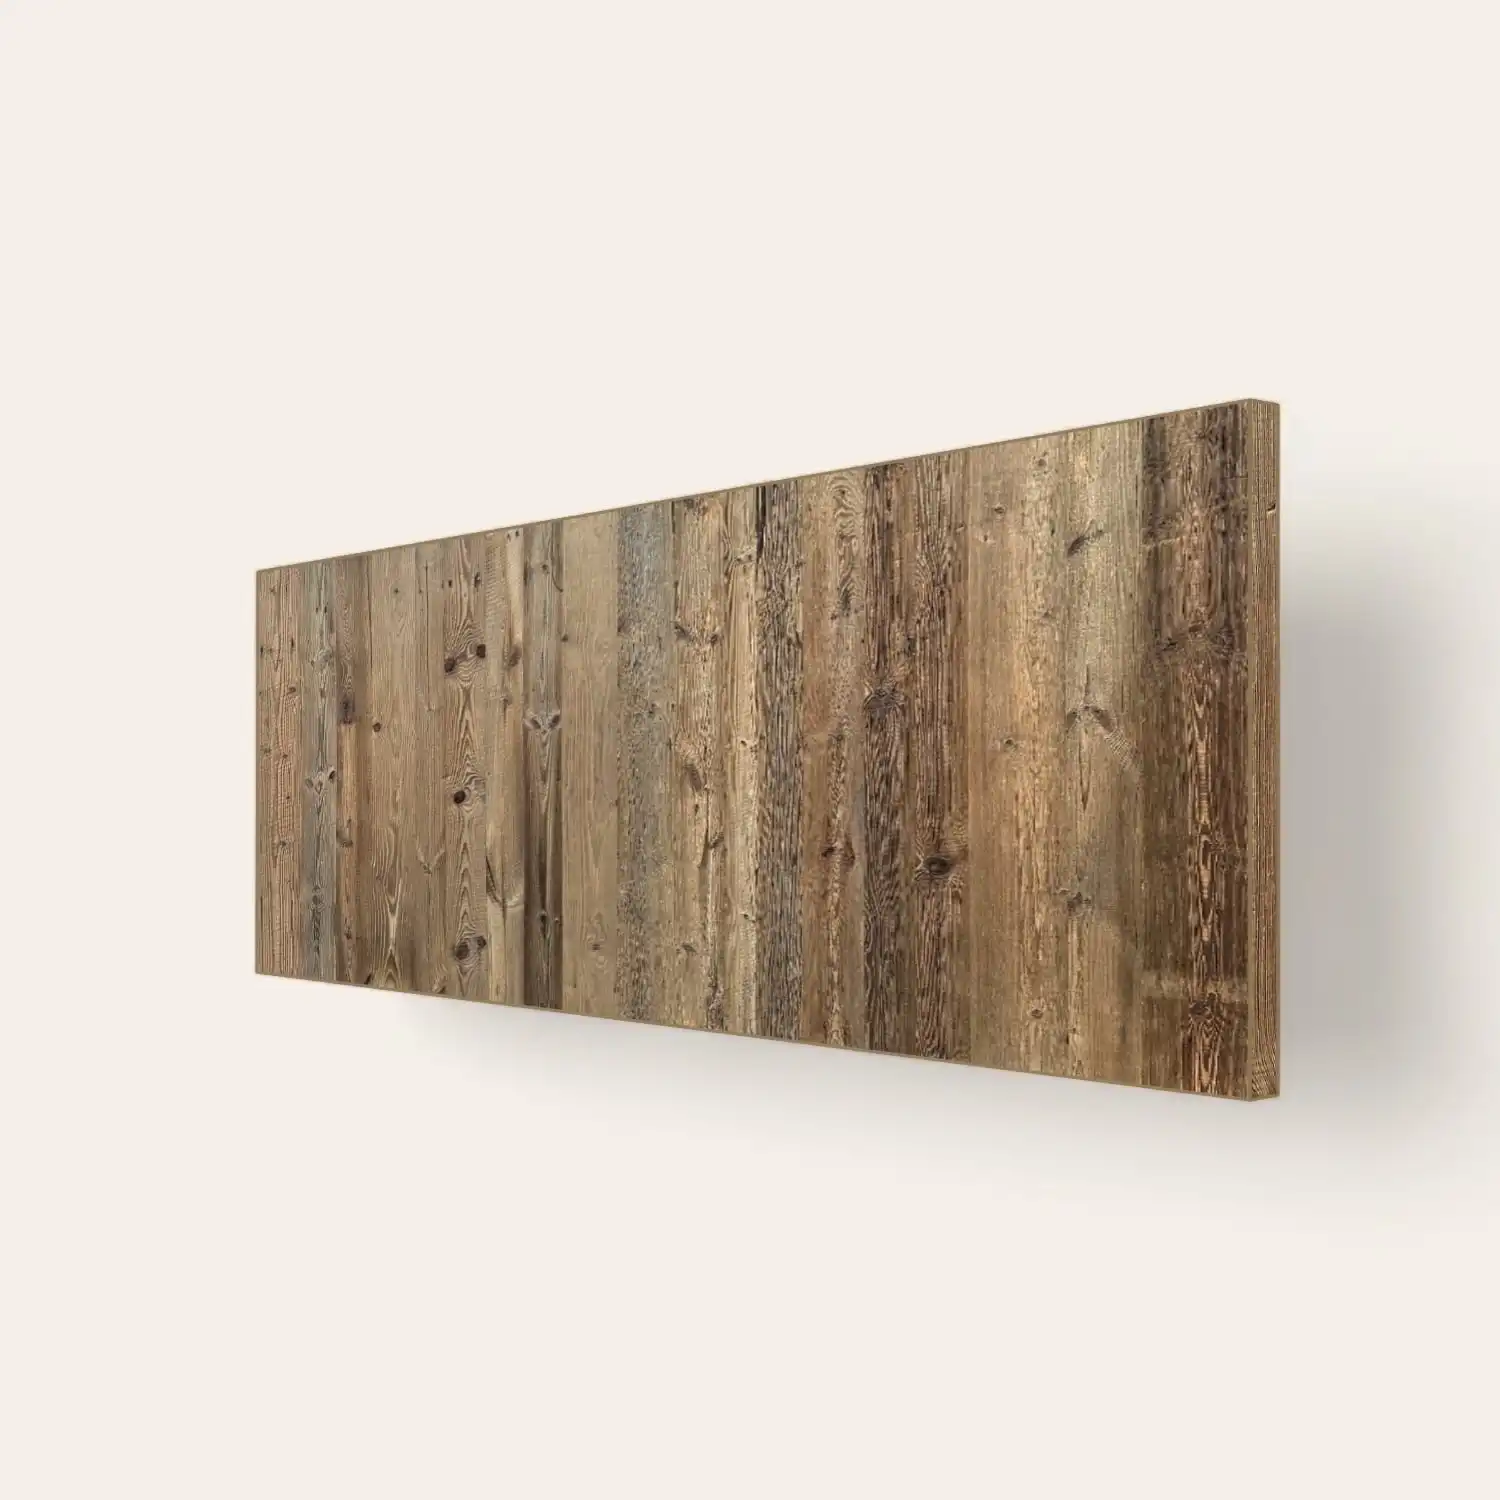  Planche de bois rustique montée sur un mur blanc. 